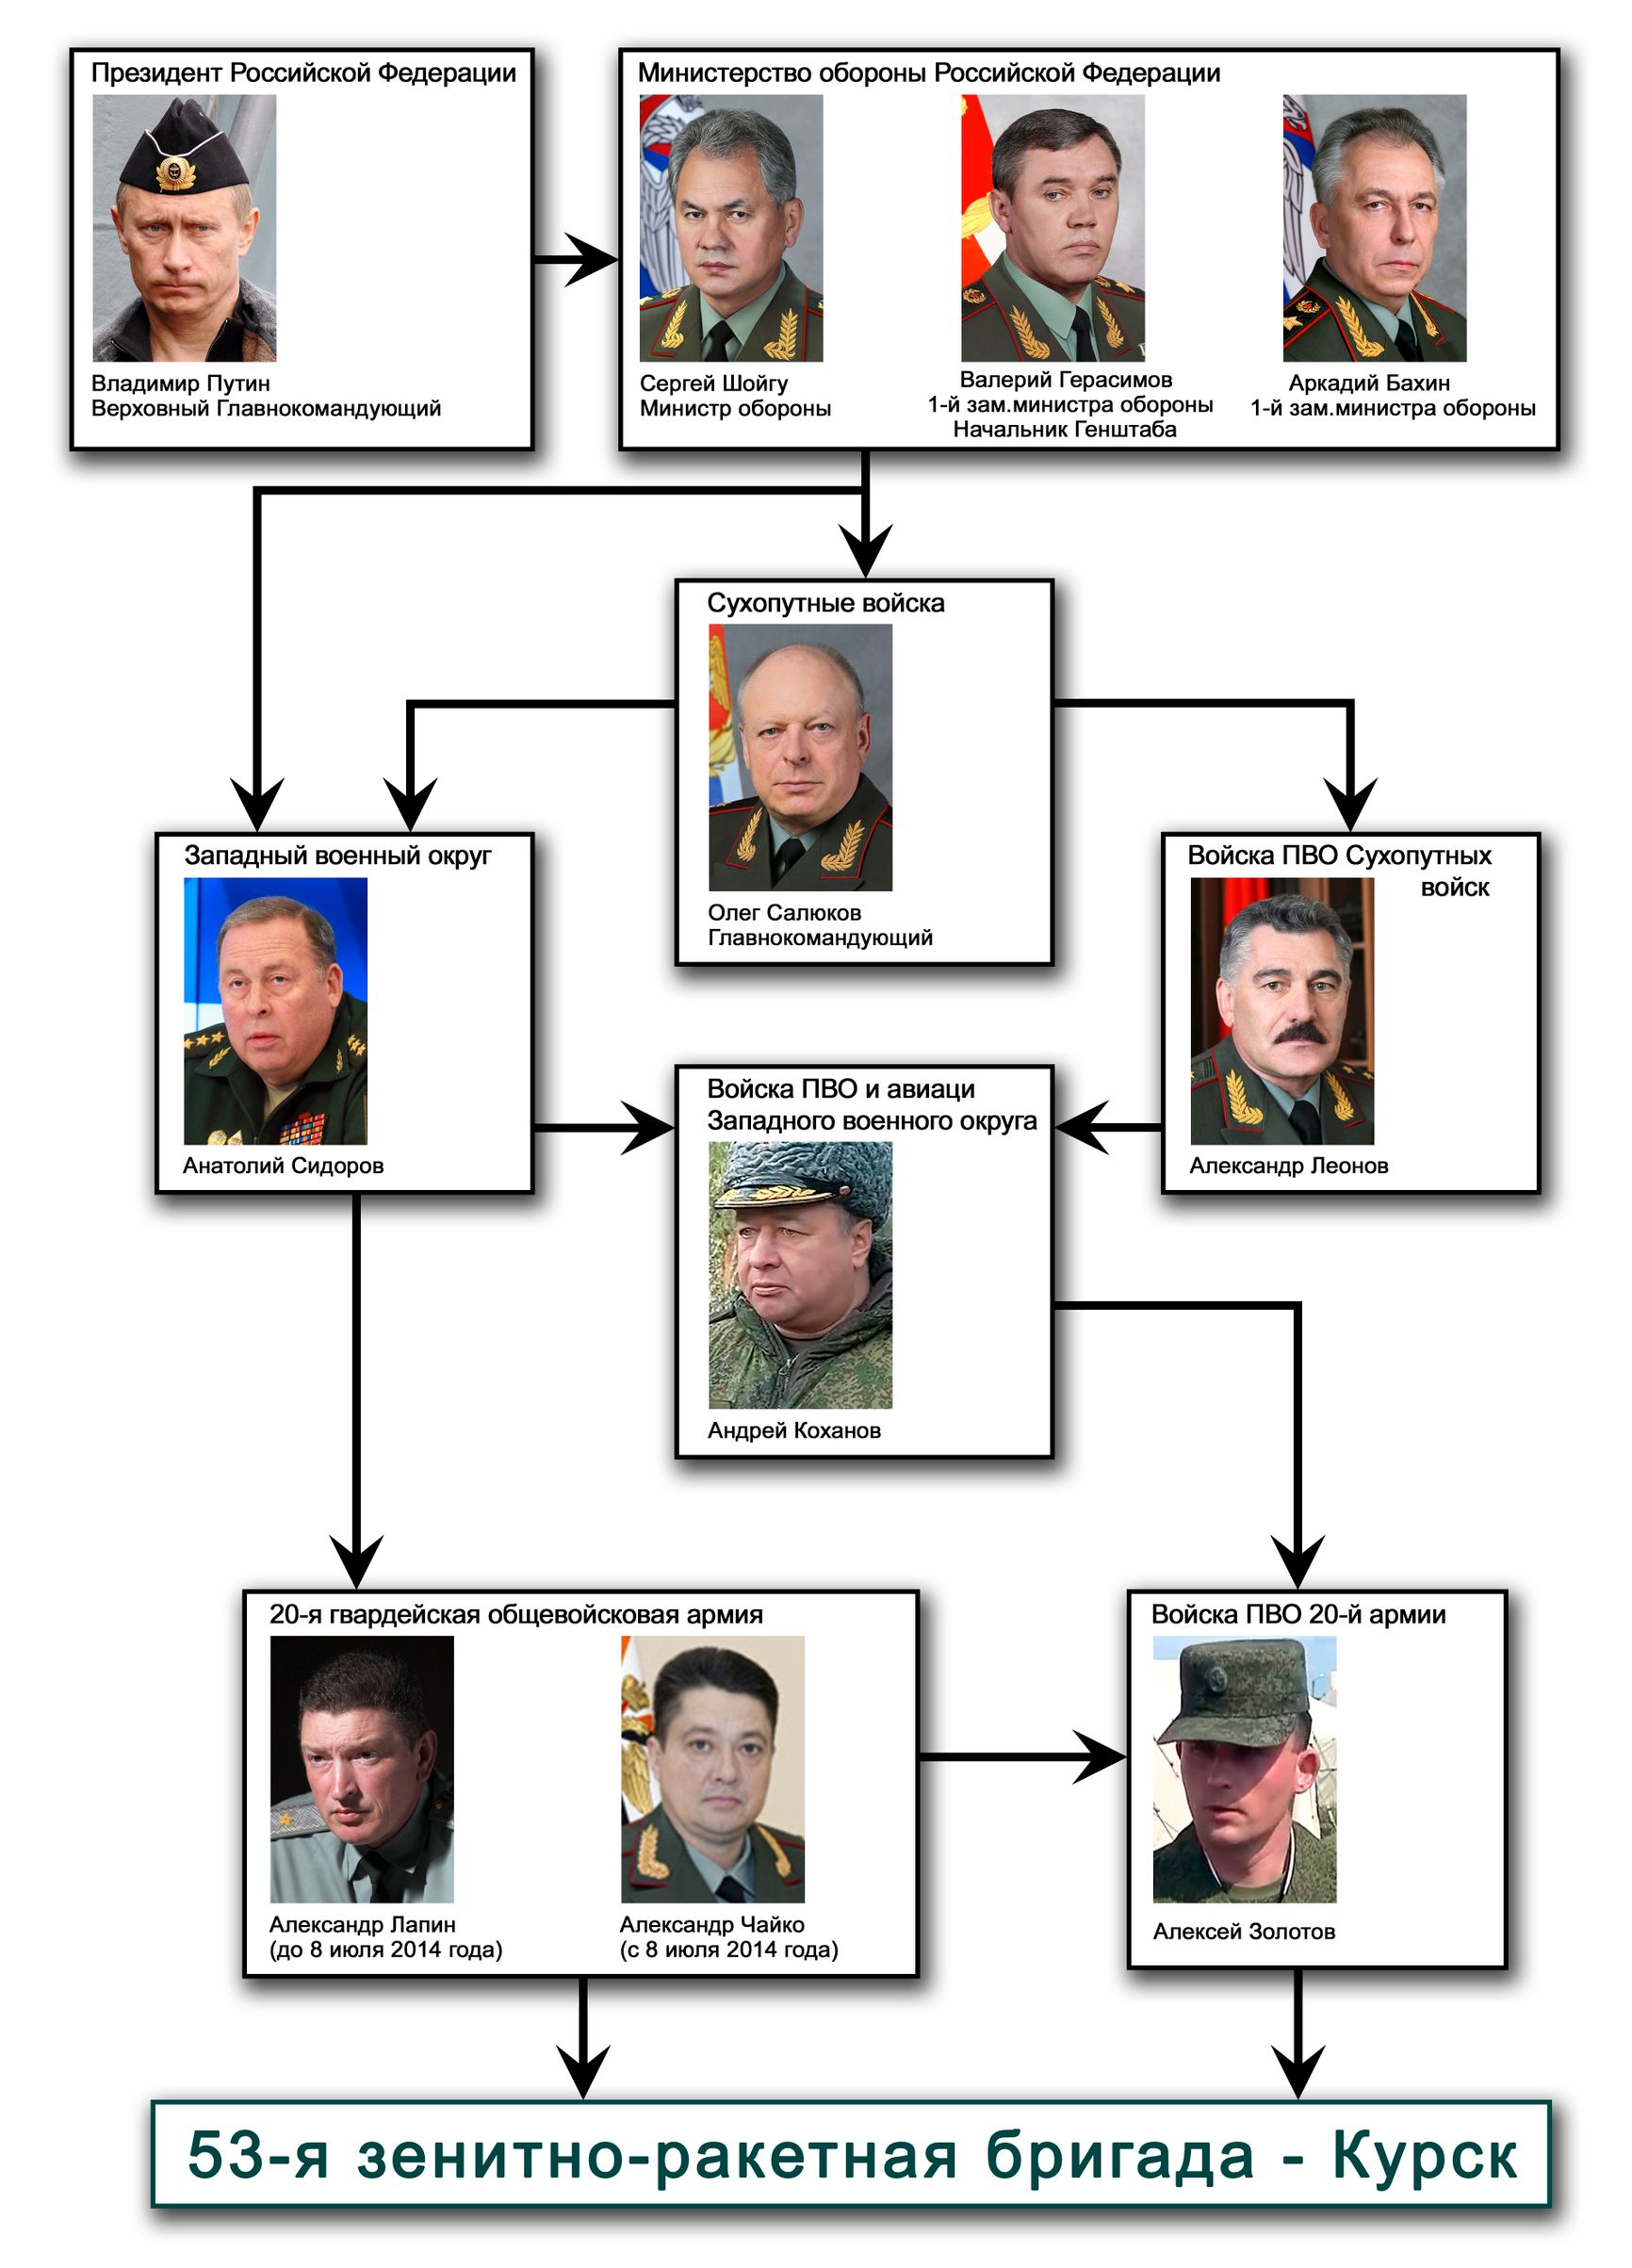 Структура военного командования от президента Российской Федерации и Минобороны России до 53-й зенитно-ракетной бригады